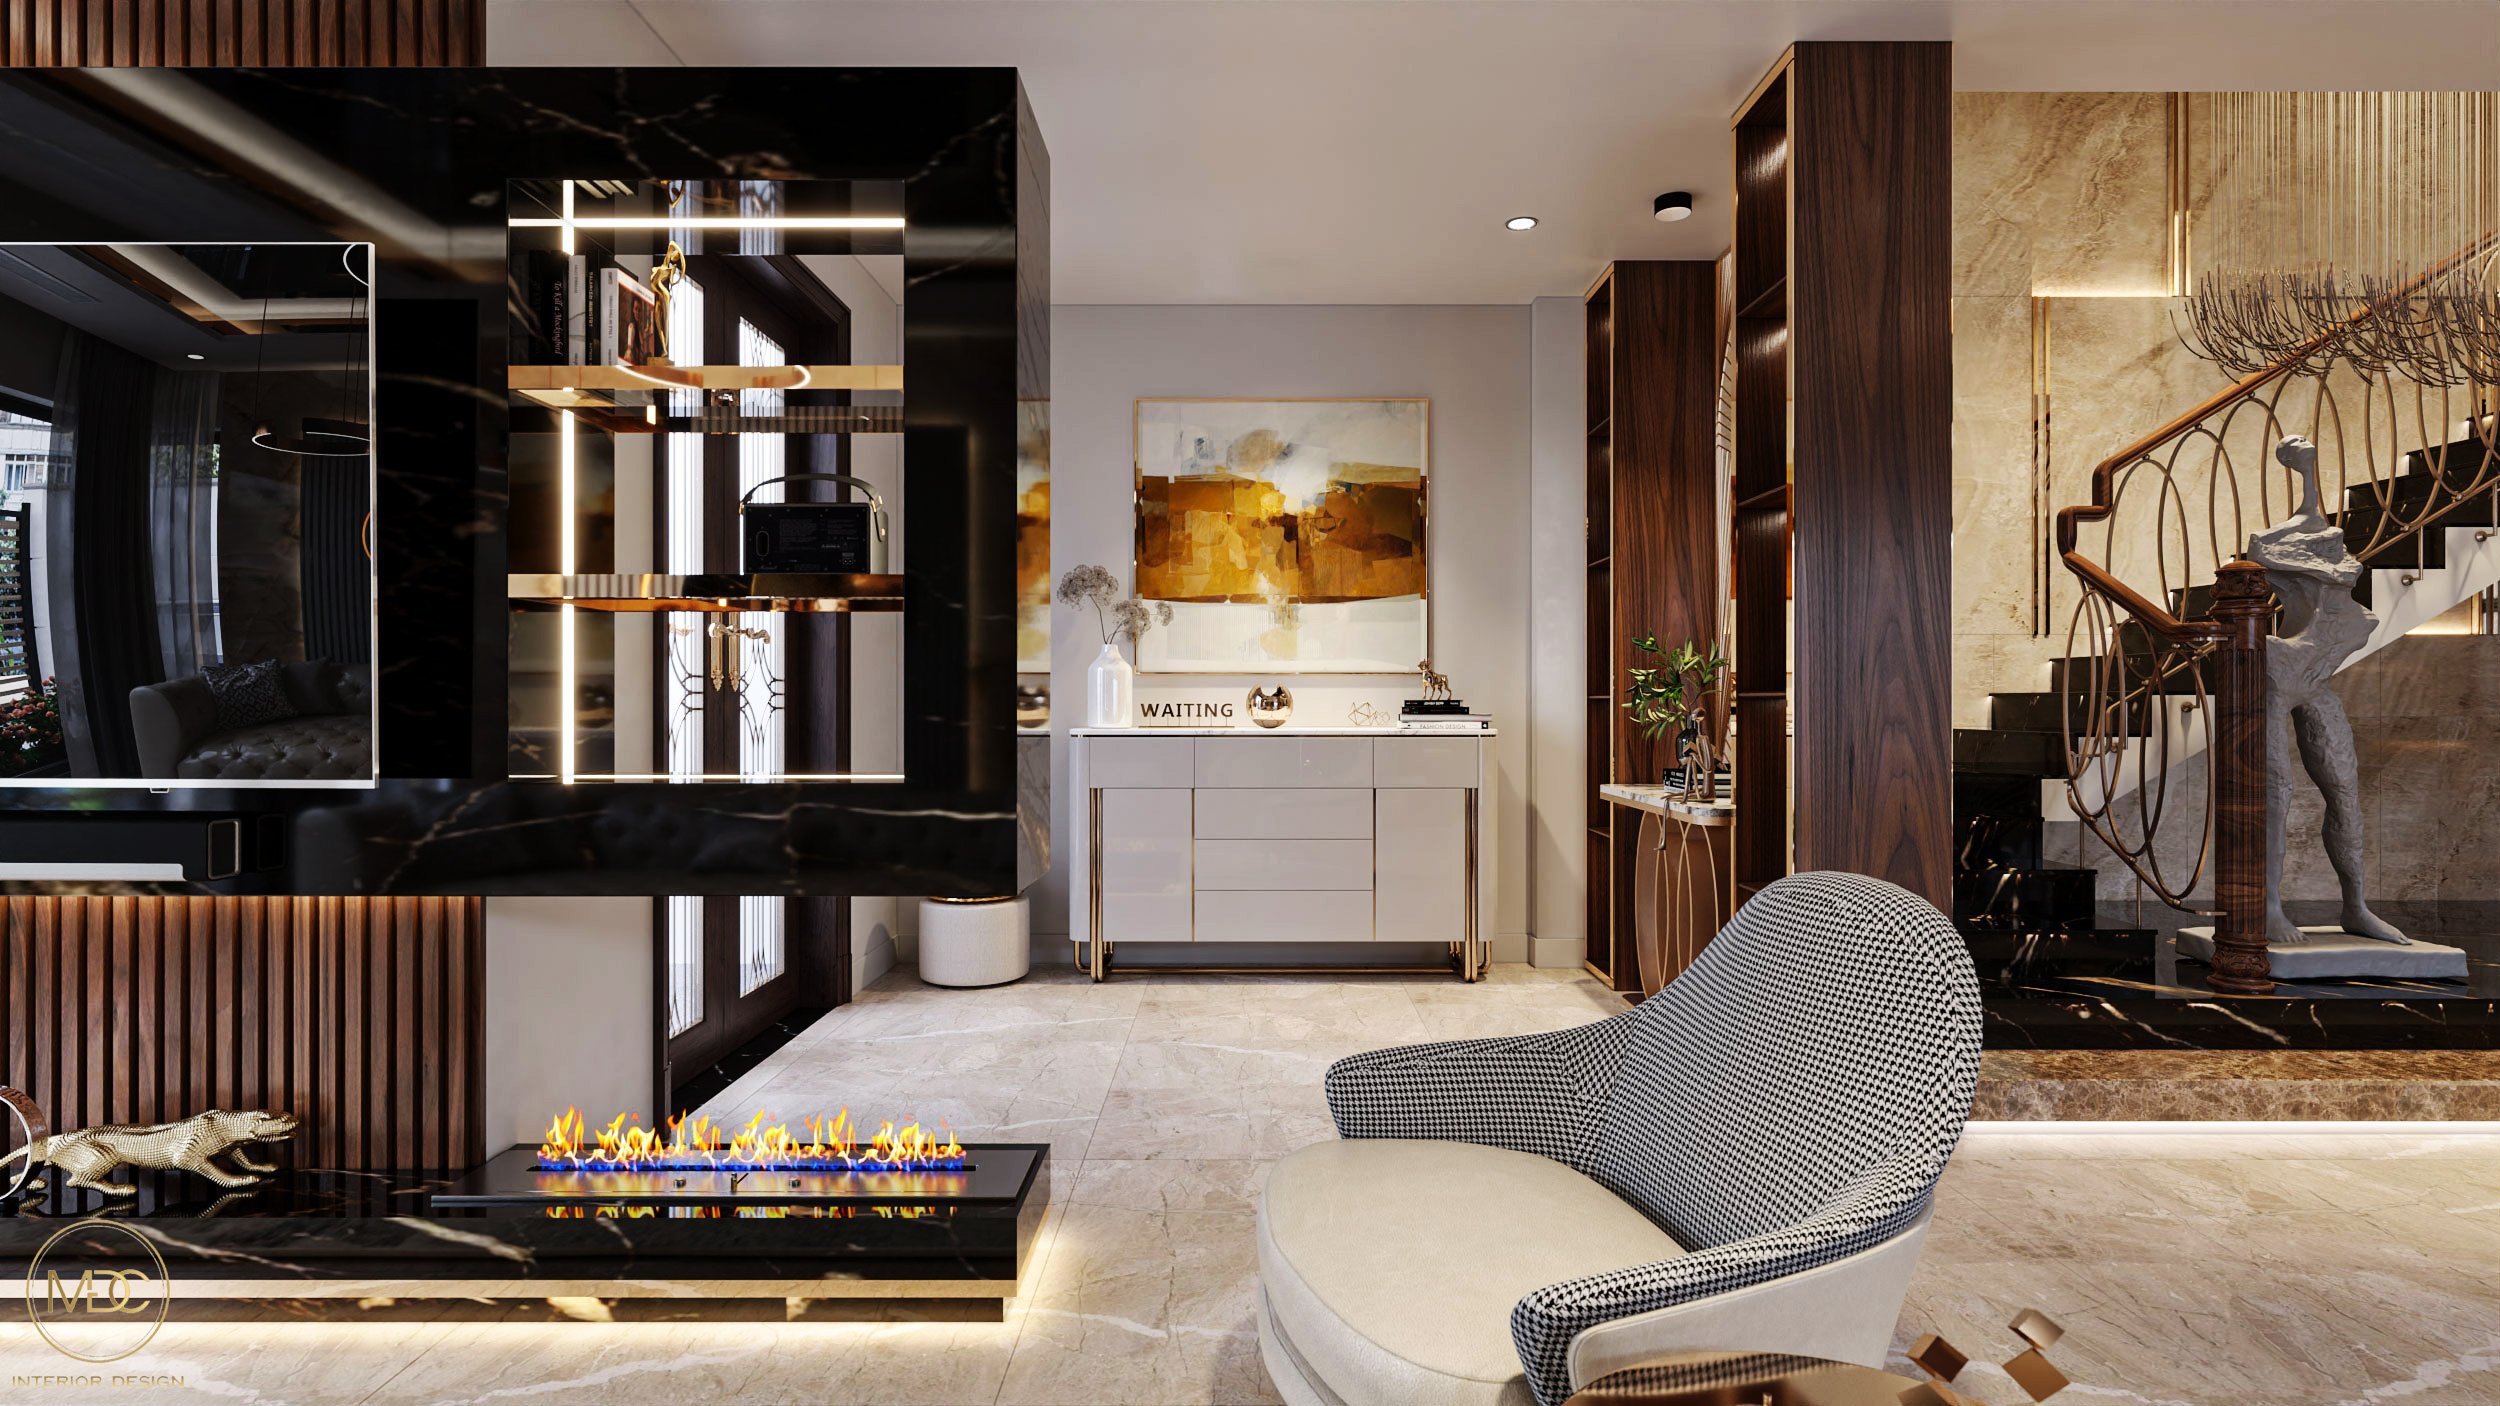 Từng chi tiết dù nhỏ nhất nhưng vẫn được các KTS nhà MDC Luxury Design thiết kế tạo nên một không gian sống hoàn hảo.